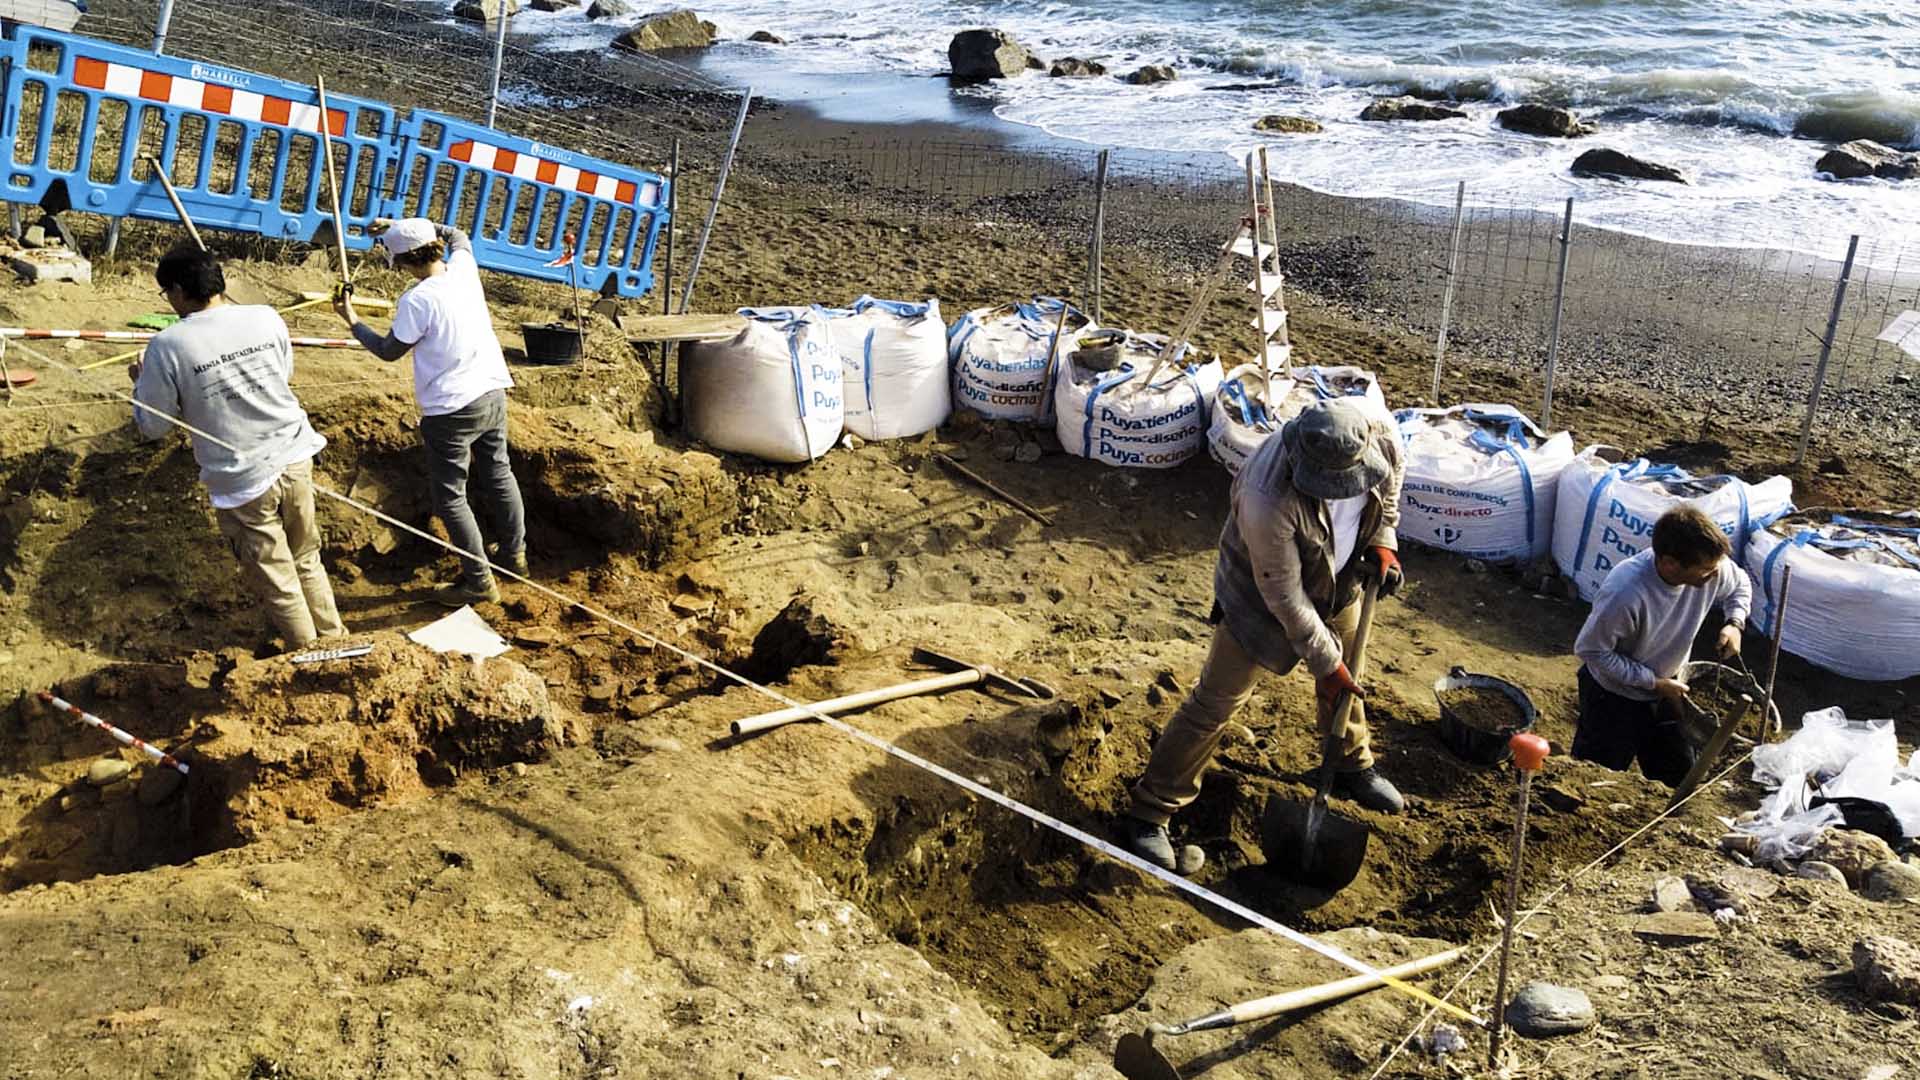 Finalizan las excavaciones realizadas en el yacimiento dunar al sur de la Basílica Paleocristiana Vega del Mar